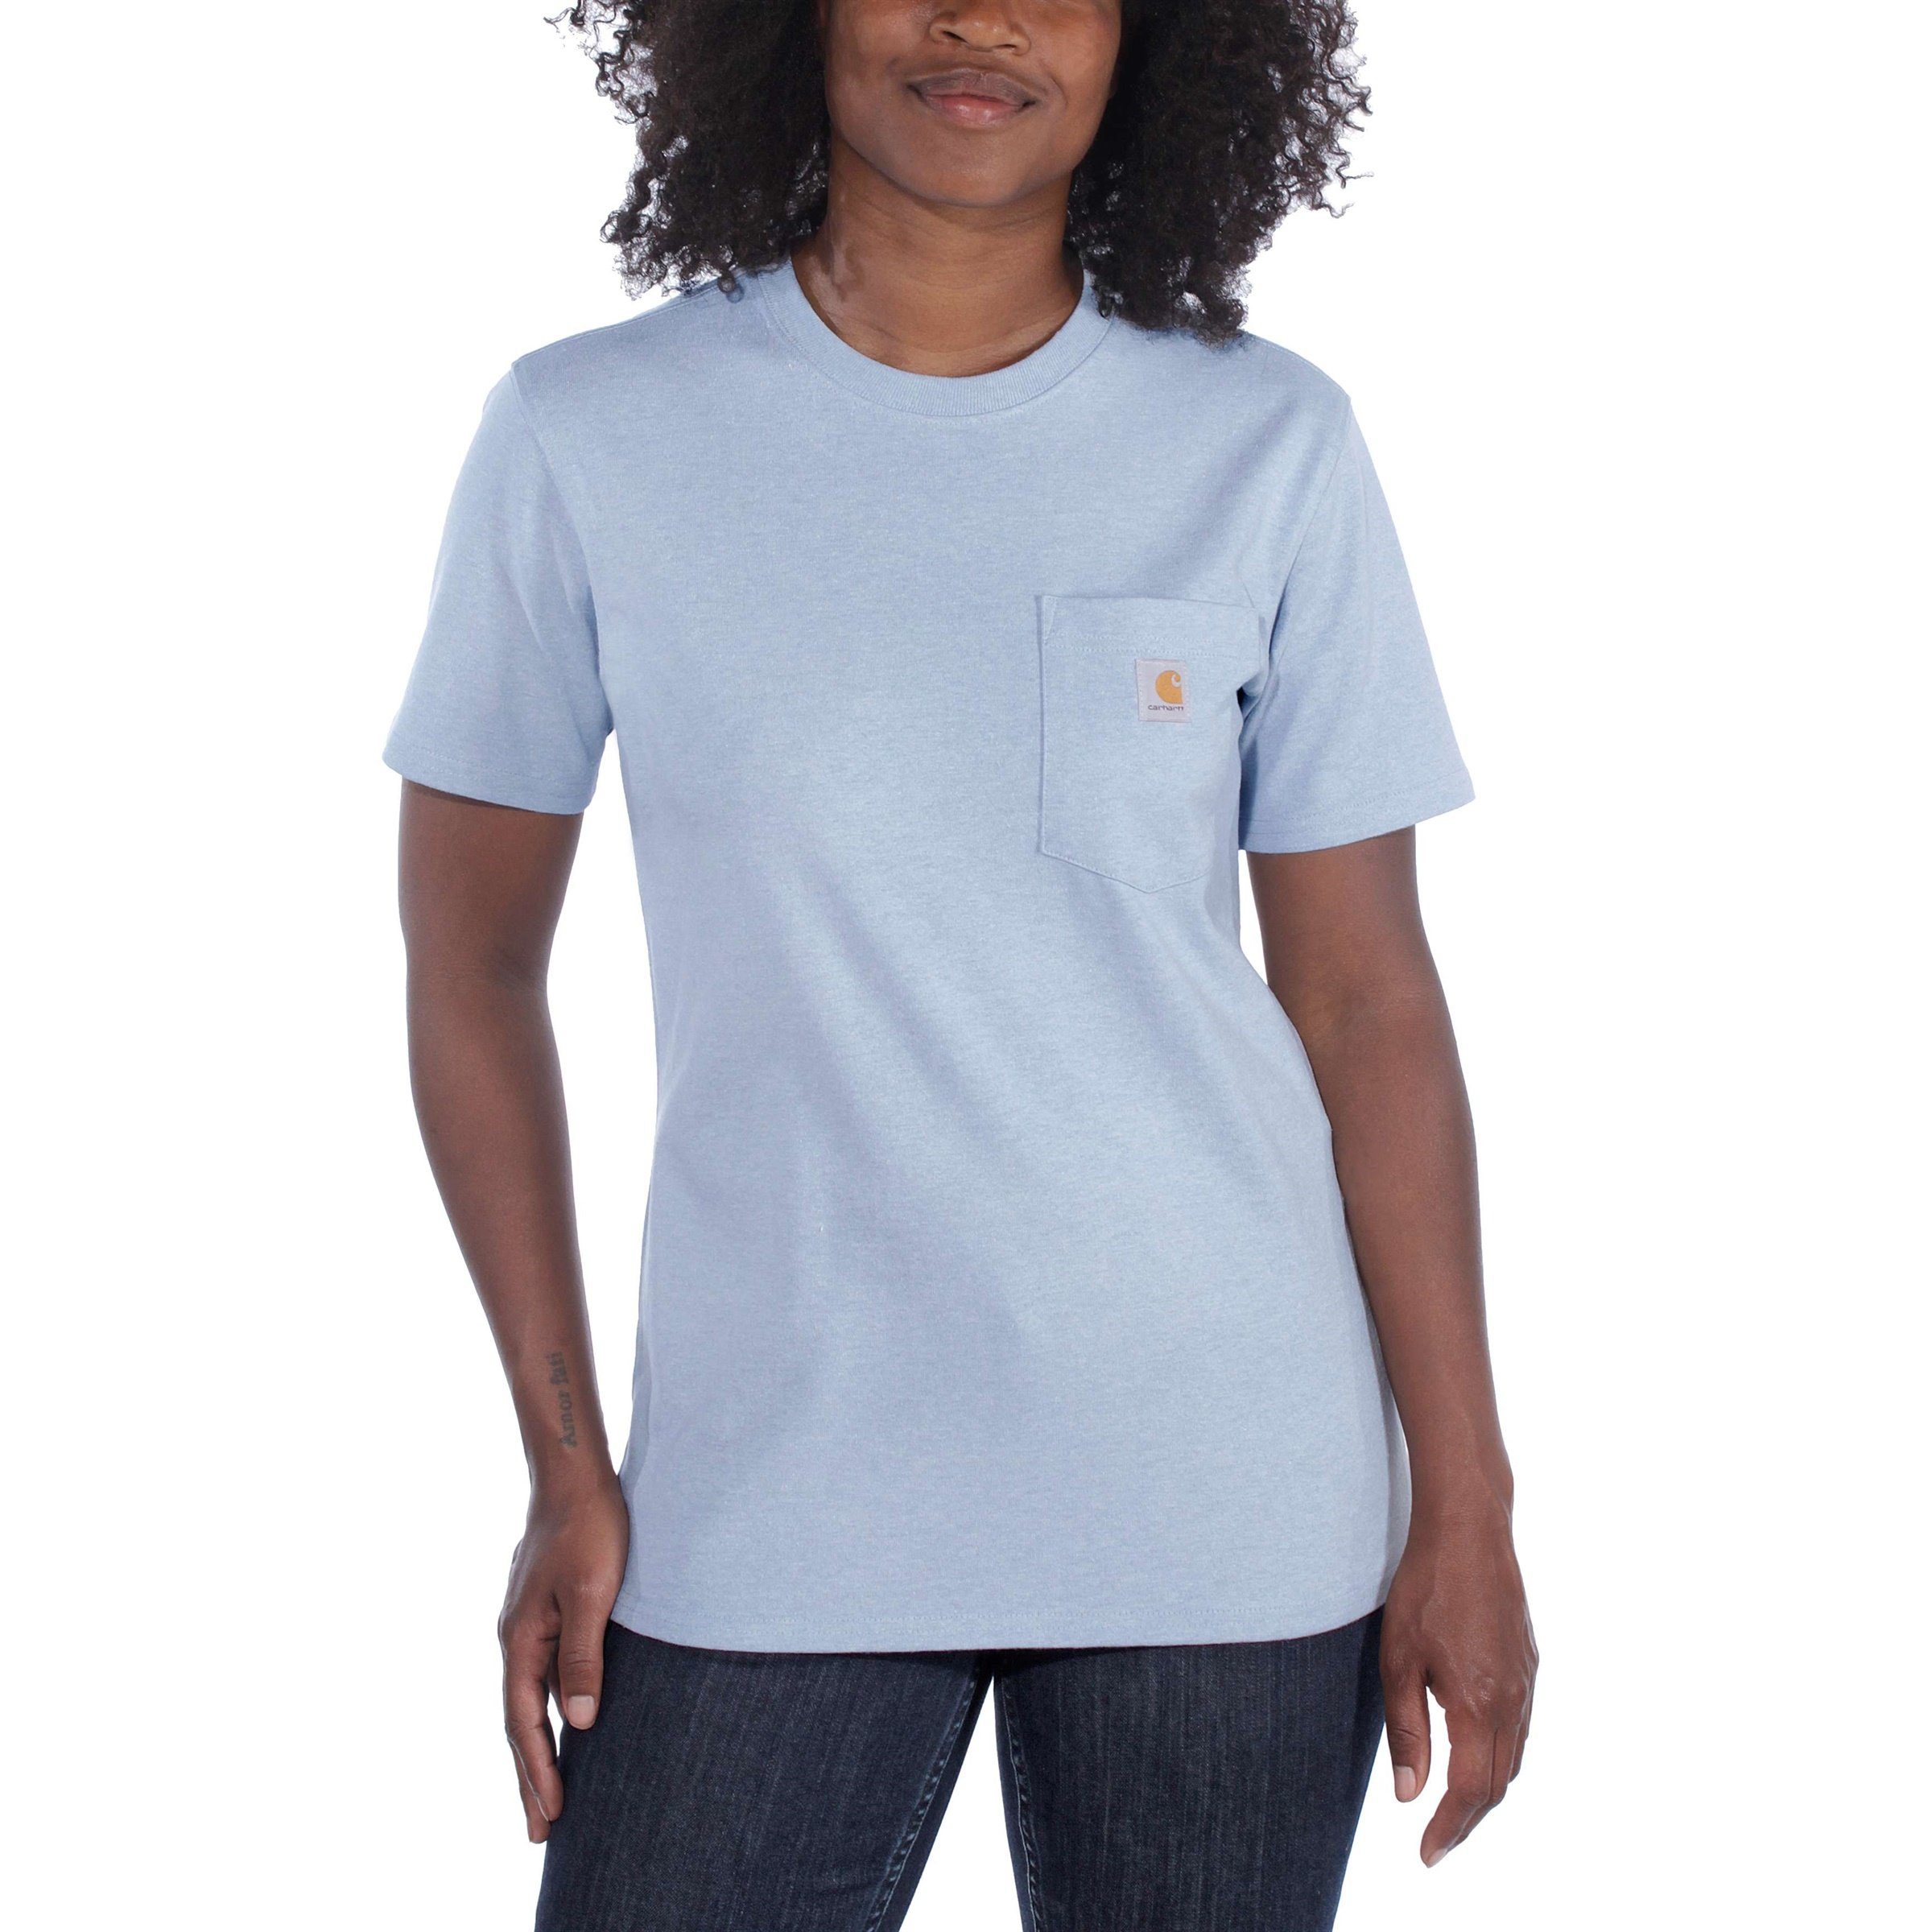 Carhartt T-Shirt Carhartt Fit Damen pale Short-Sleeve Heavyweight sun Pocket Loose T-Shirt Adult